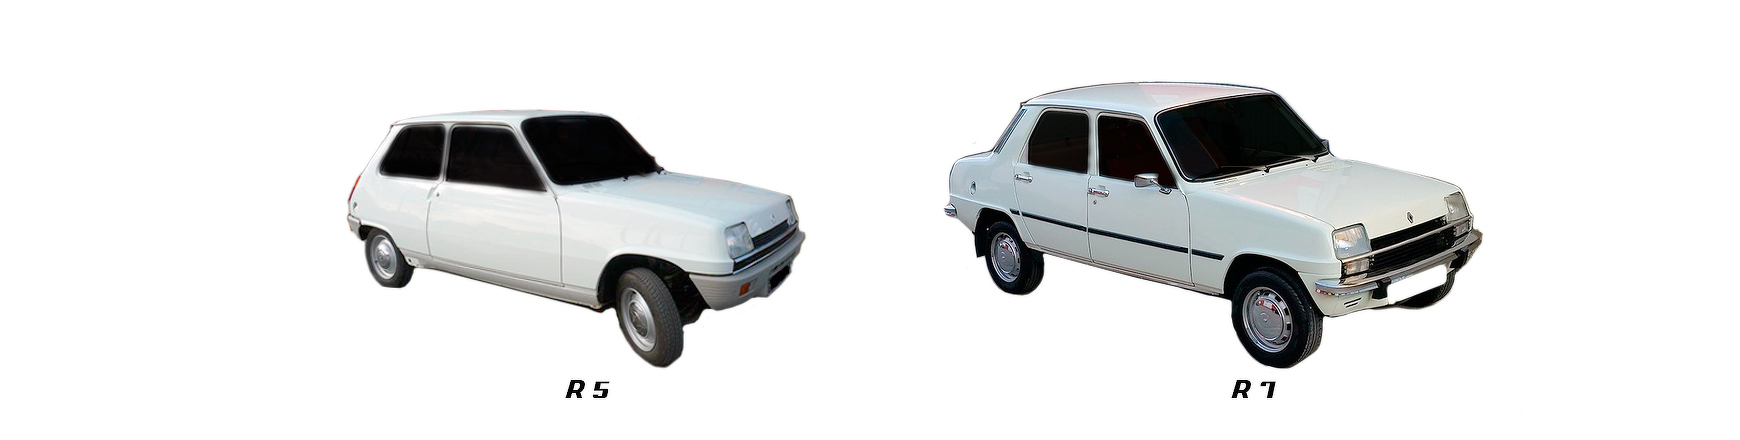 Piezas y Recambios de Renault R5 | R7 (B40|C40|S40) de 1972 a 1996 | Veramauto.es